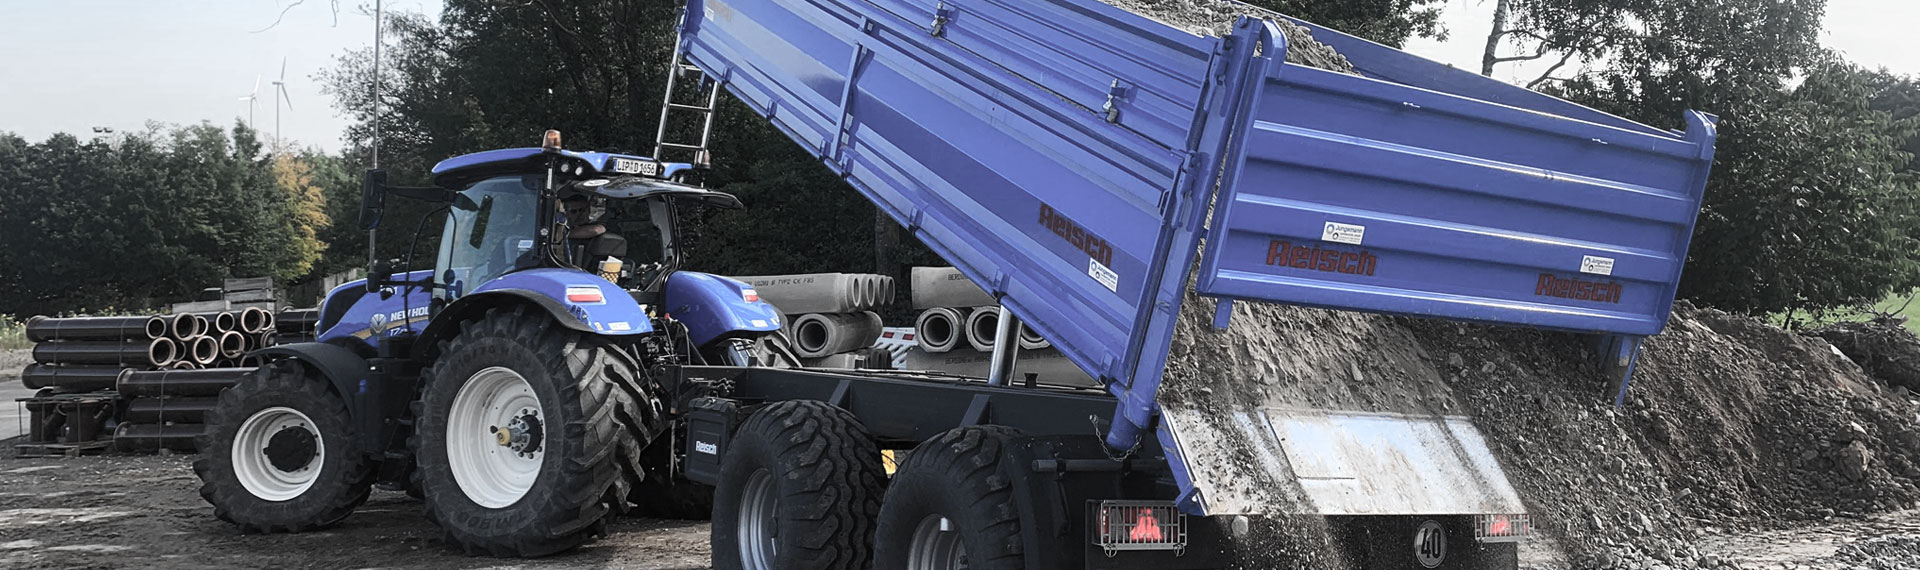 Um caminhão basculante azul com carroceria feita com o aço em chapas finas Hardox®, despejando uma carga de rochas.